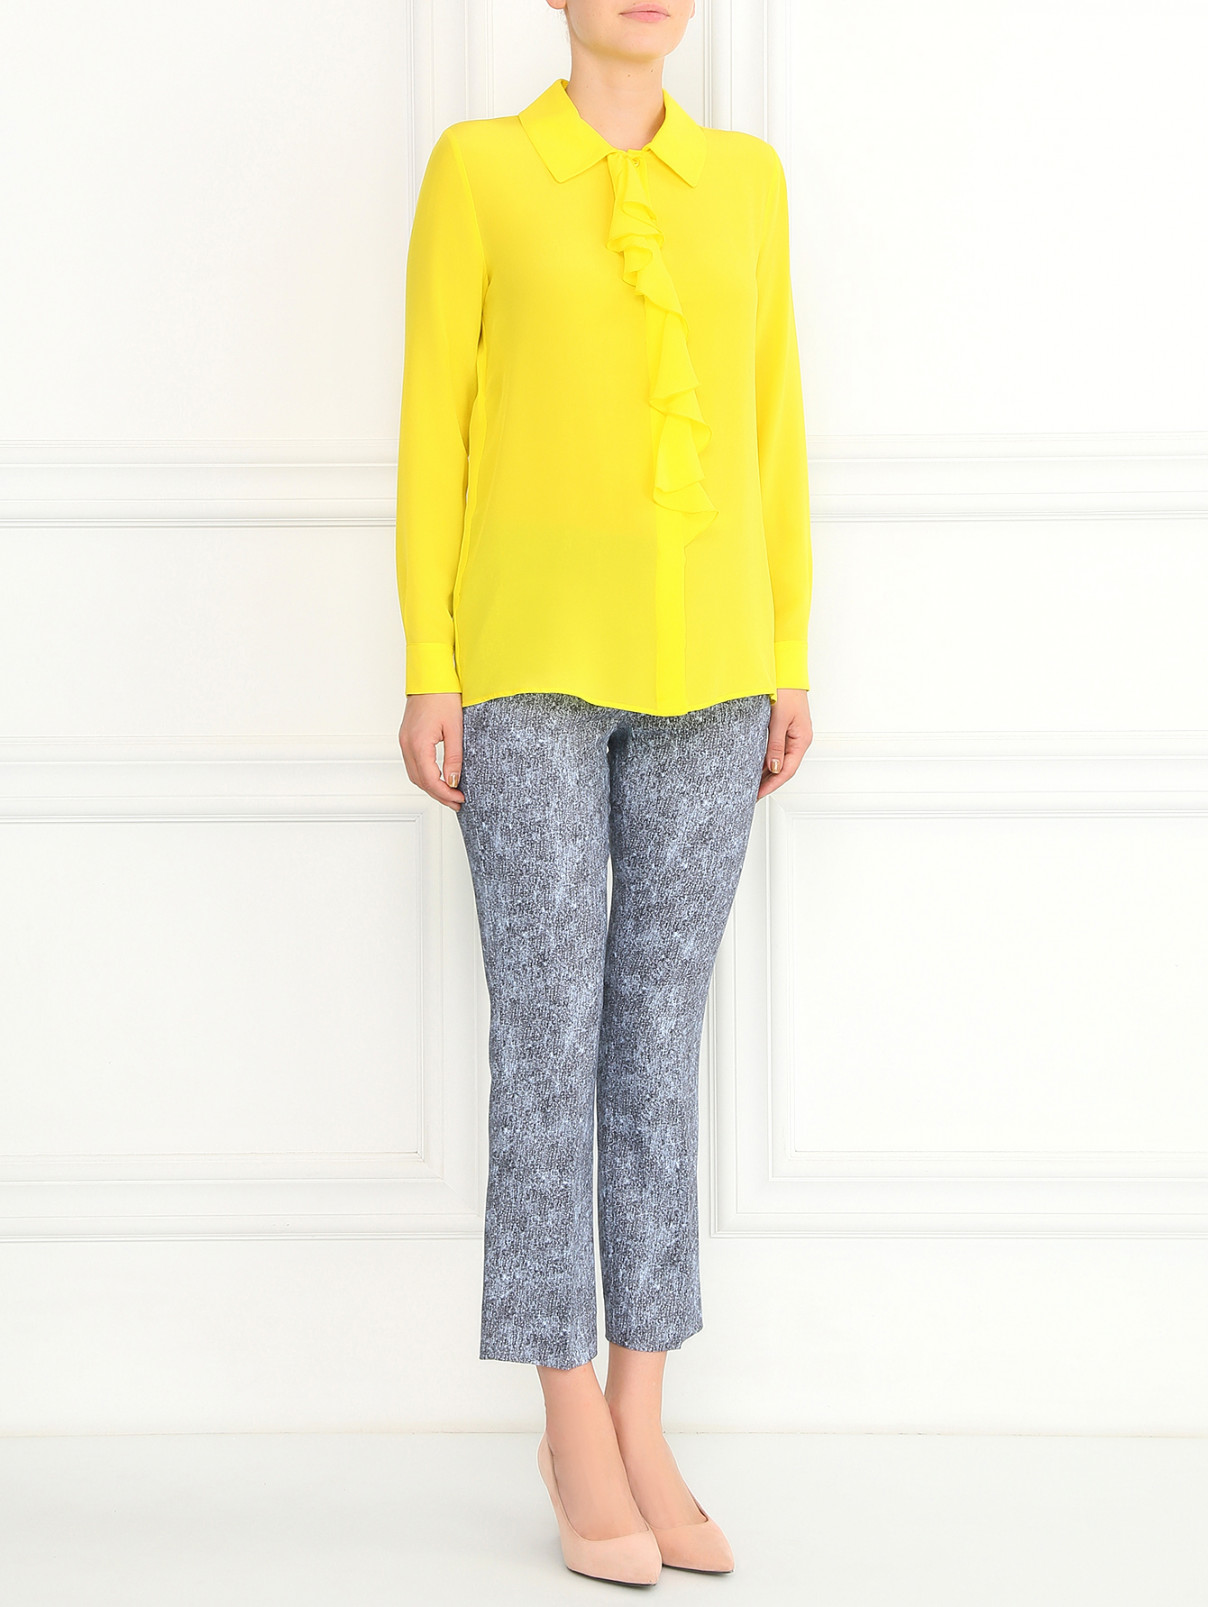 Блуза из шелка с воланом Moschino Cheap&Chic  –  Модель Общий вид  – Цвет:  Желтый